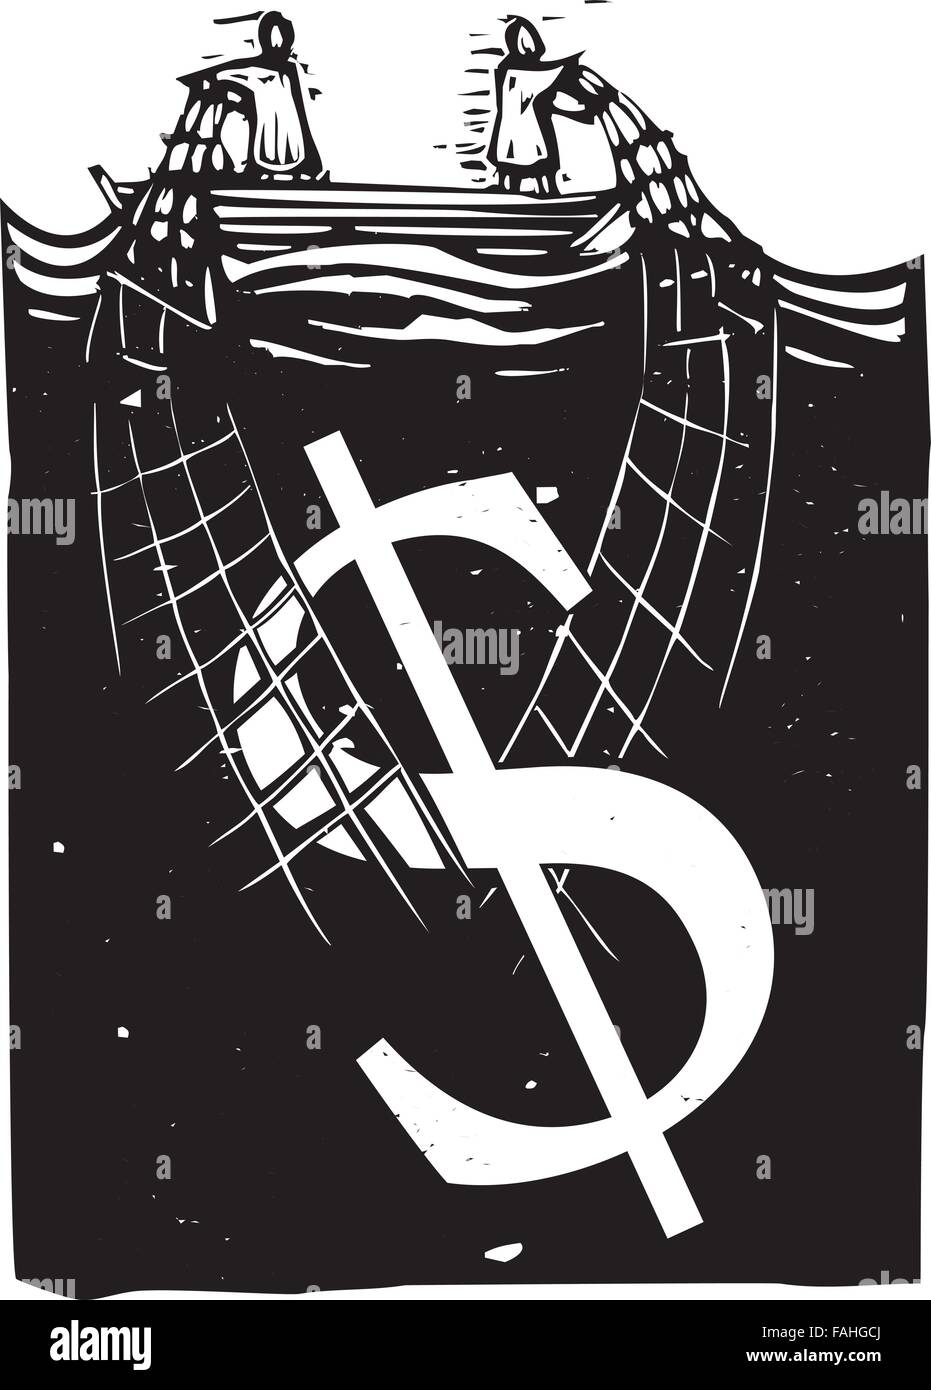 Holzschnitt Stil expressionistische Bild von zwei Personen in einem Boot schleppen ein Dollarzeichen aus dem Wasser Stock Vektor